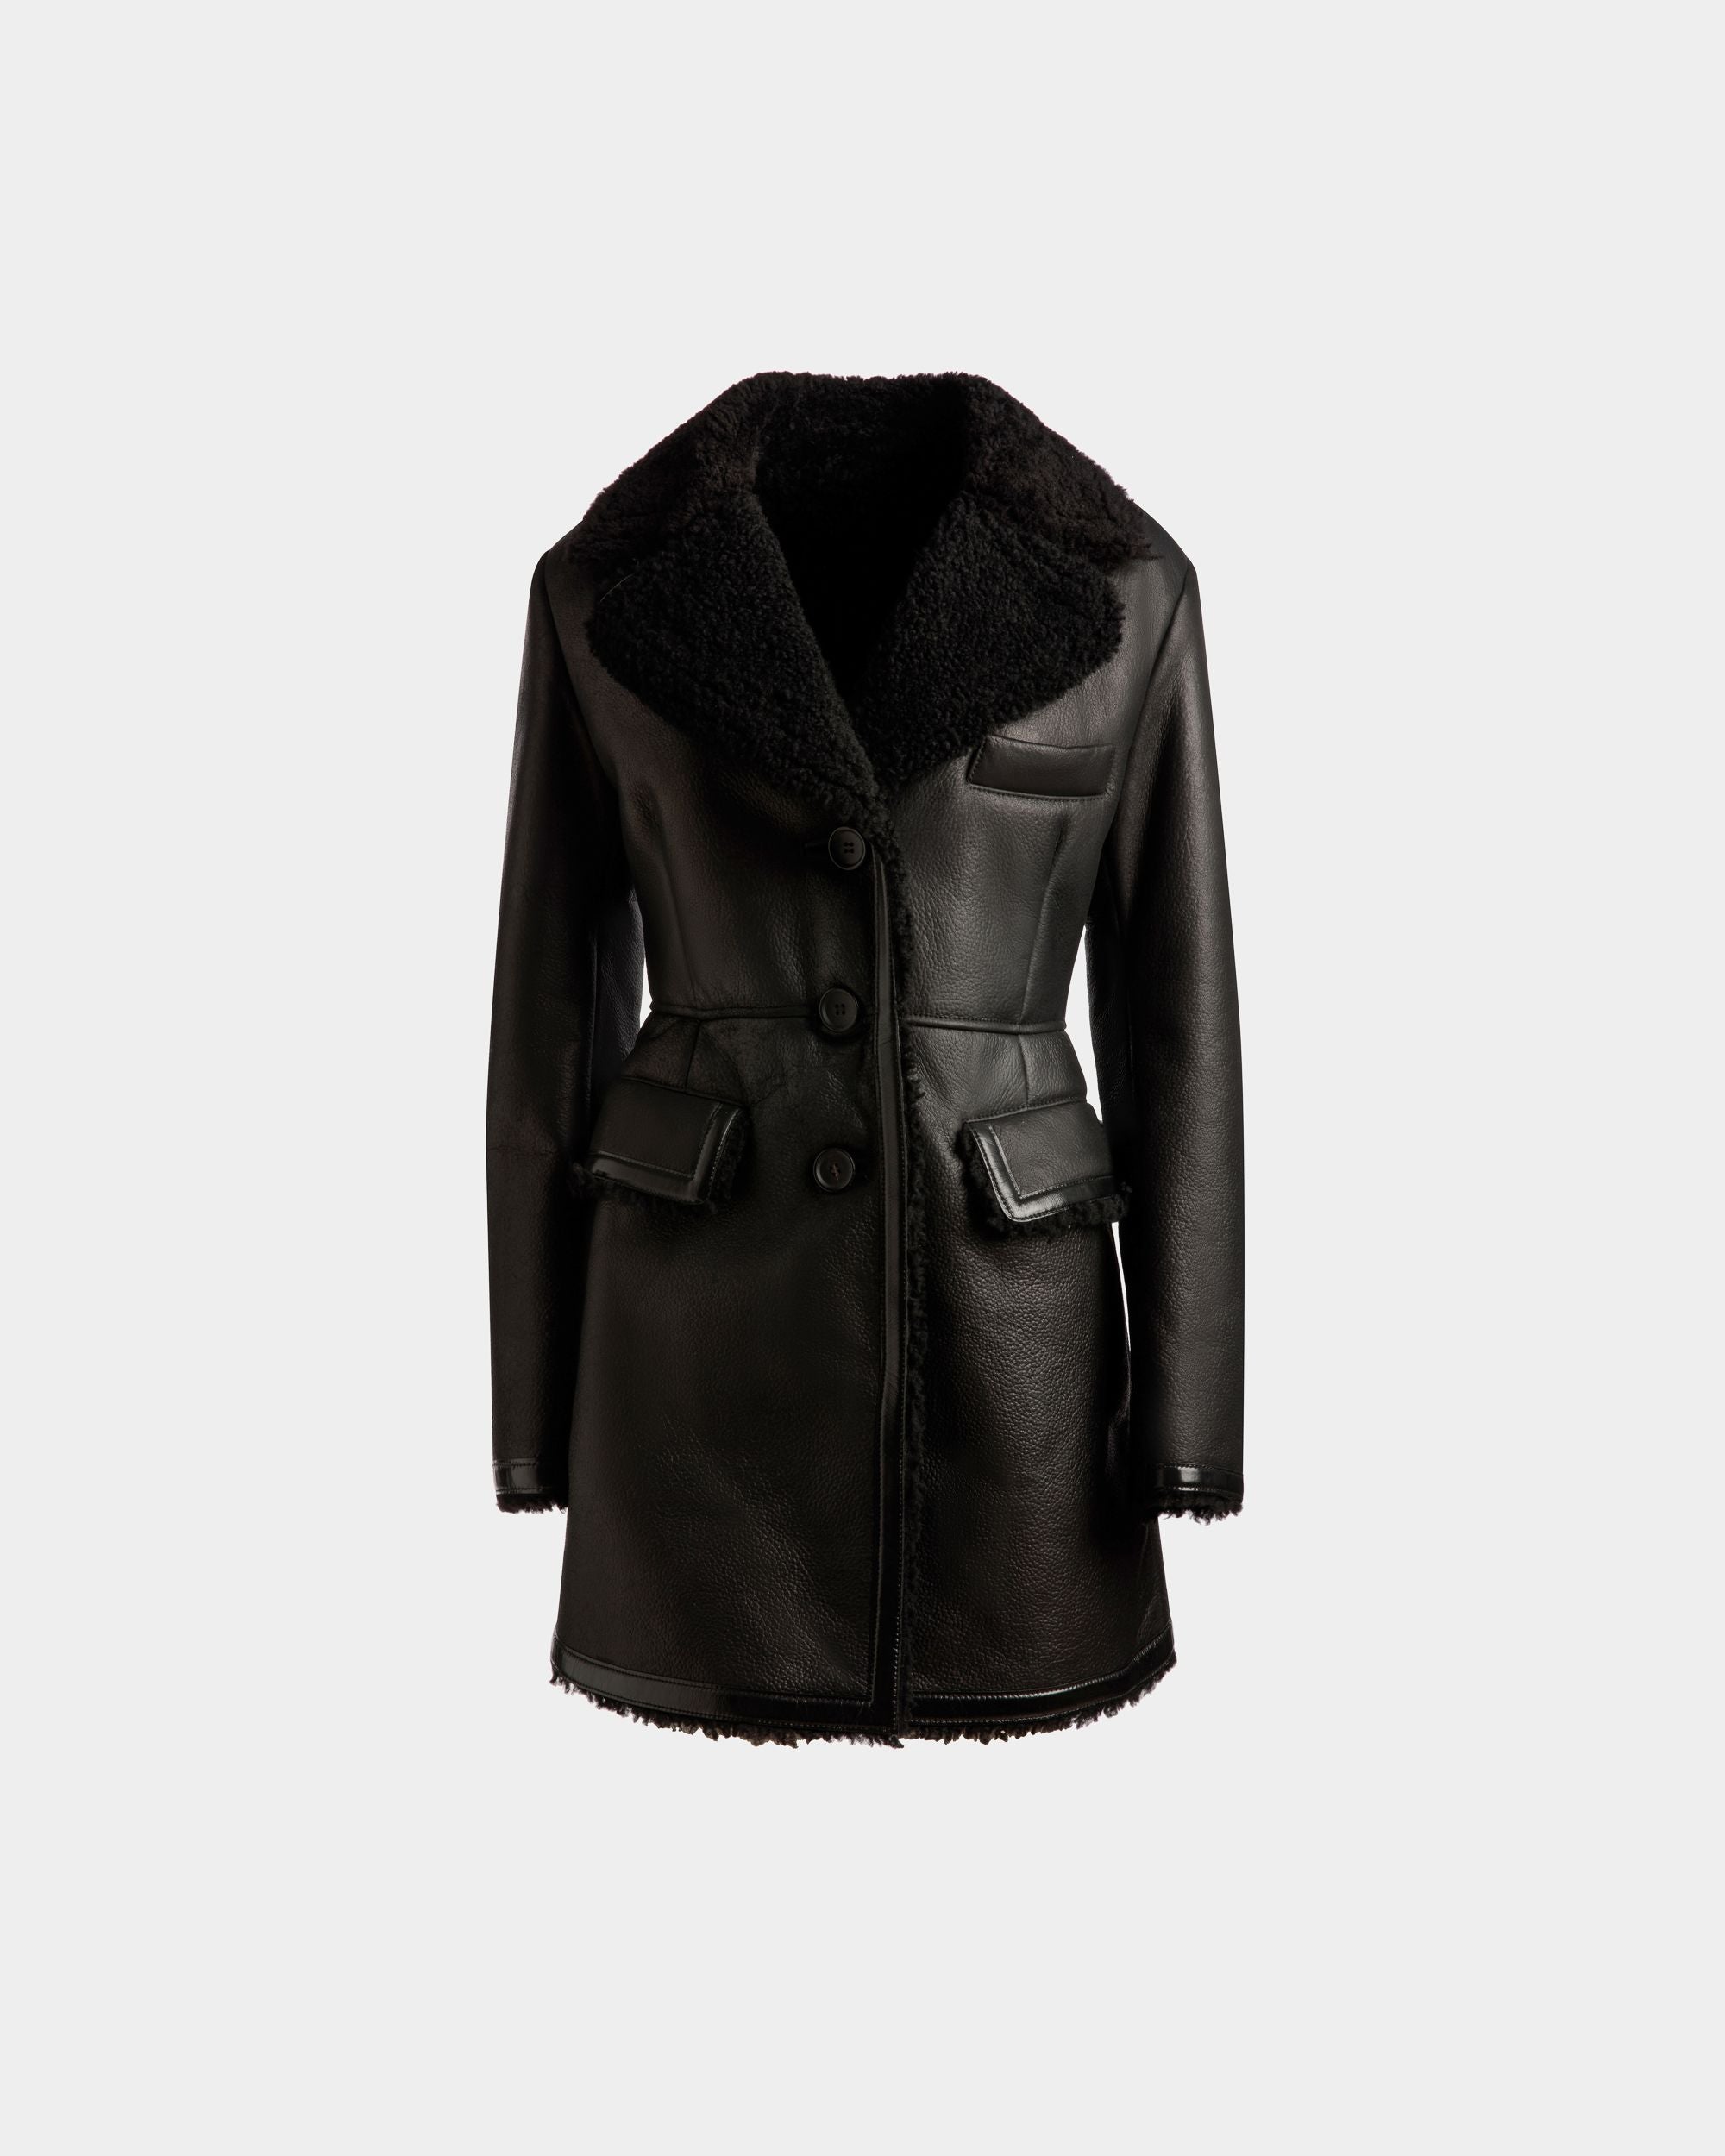 Manteau doublé de laine | Manteau pour femme | Cuir noir | Bally | Still Life Devant